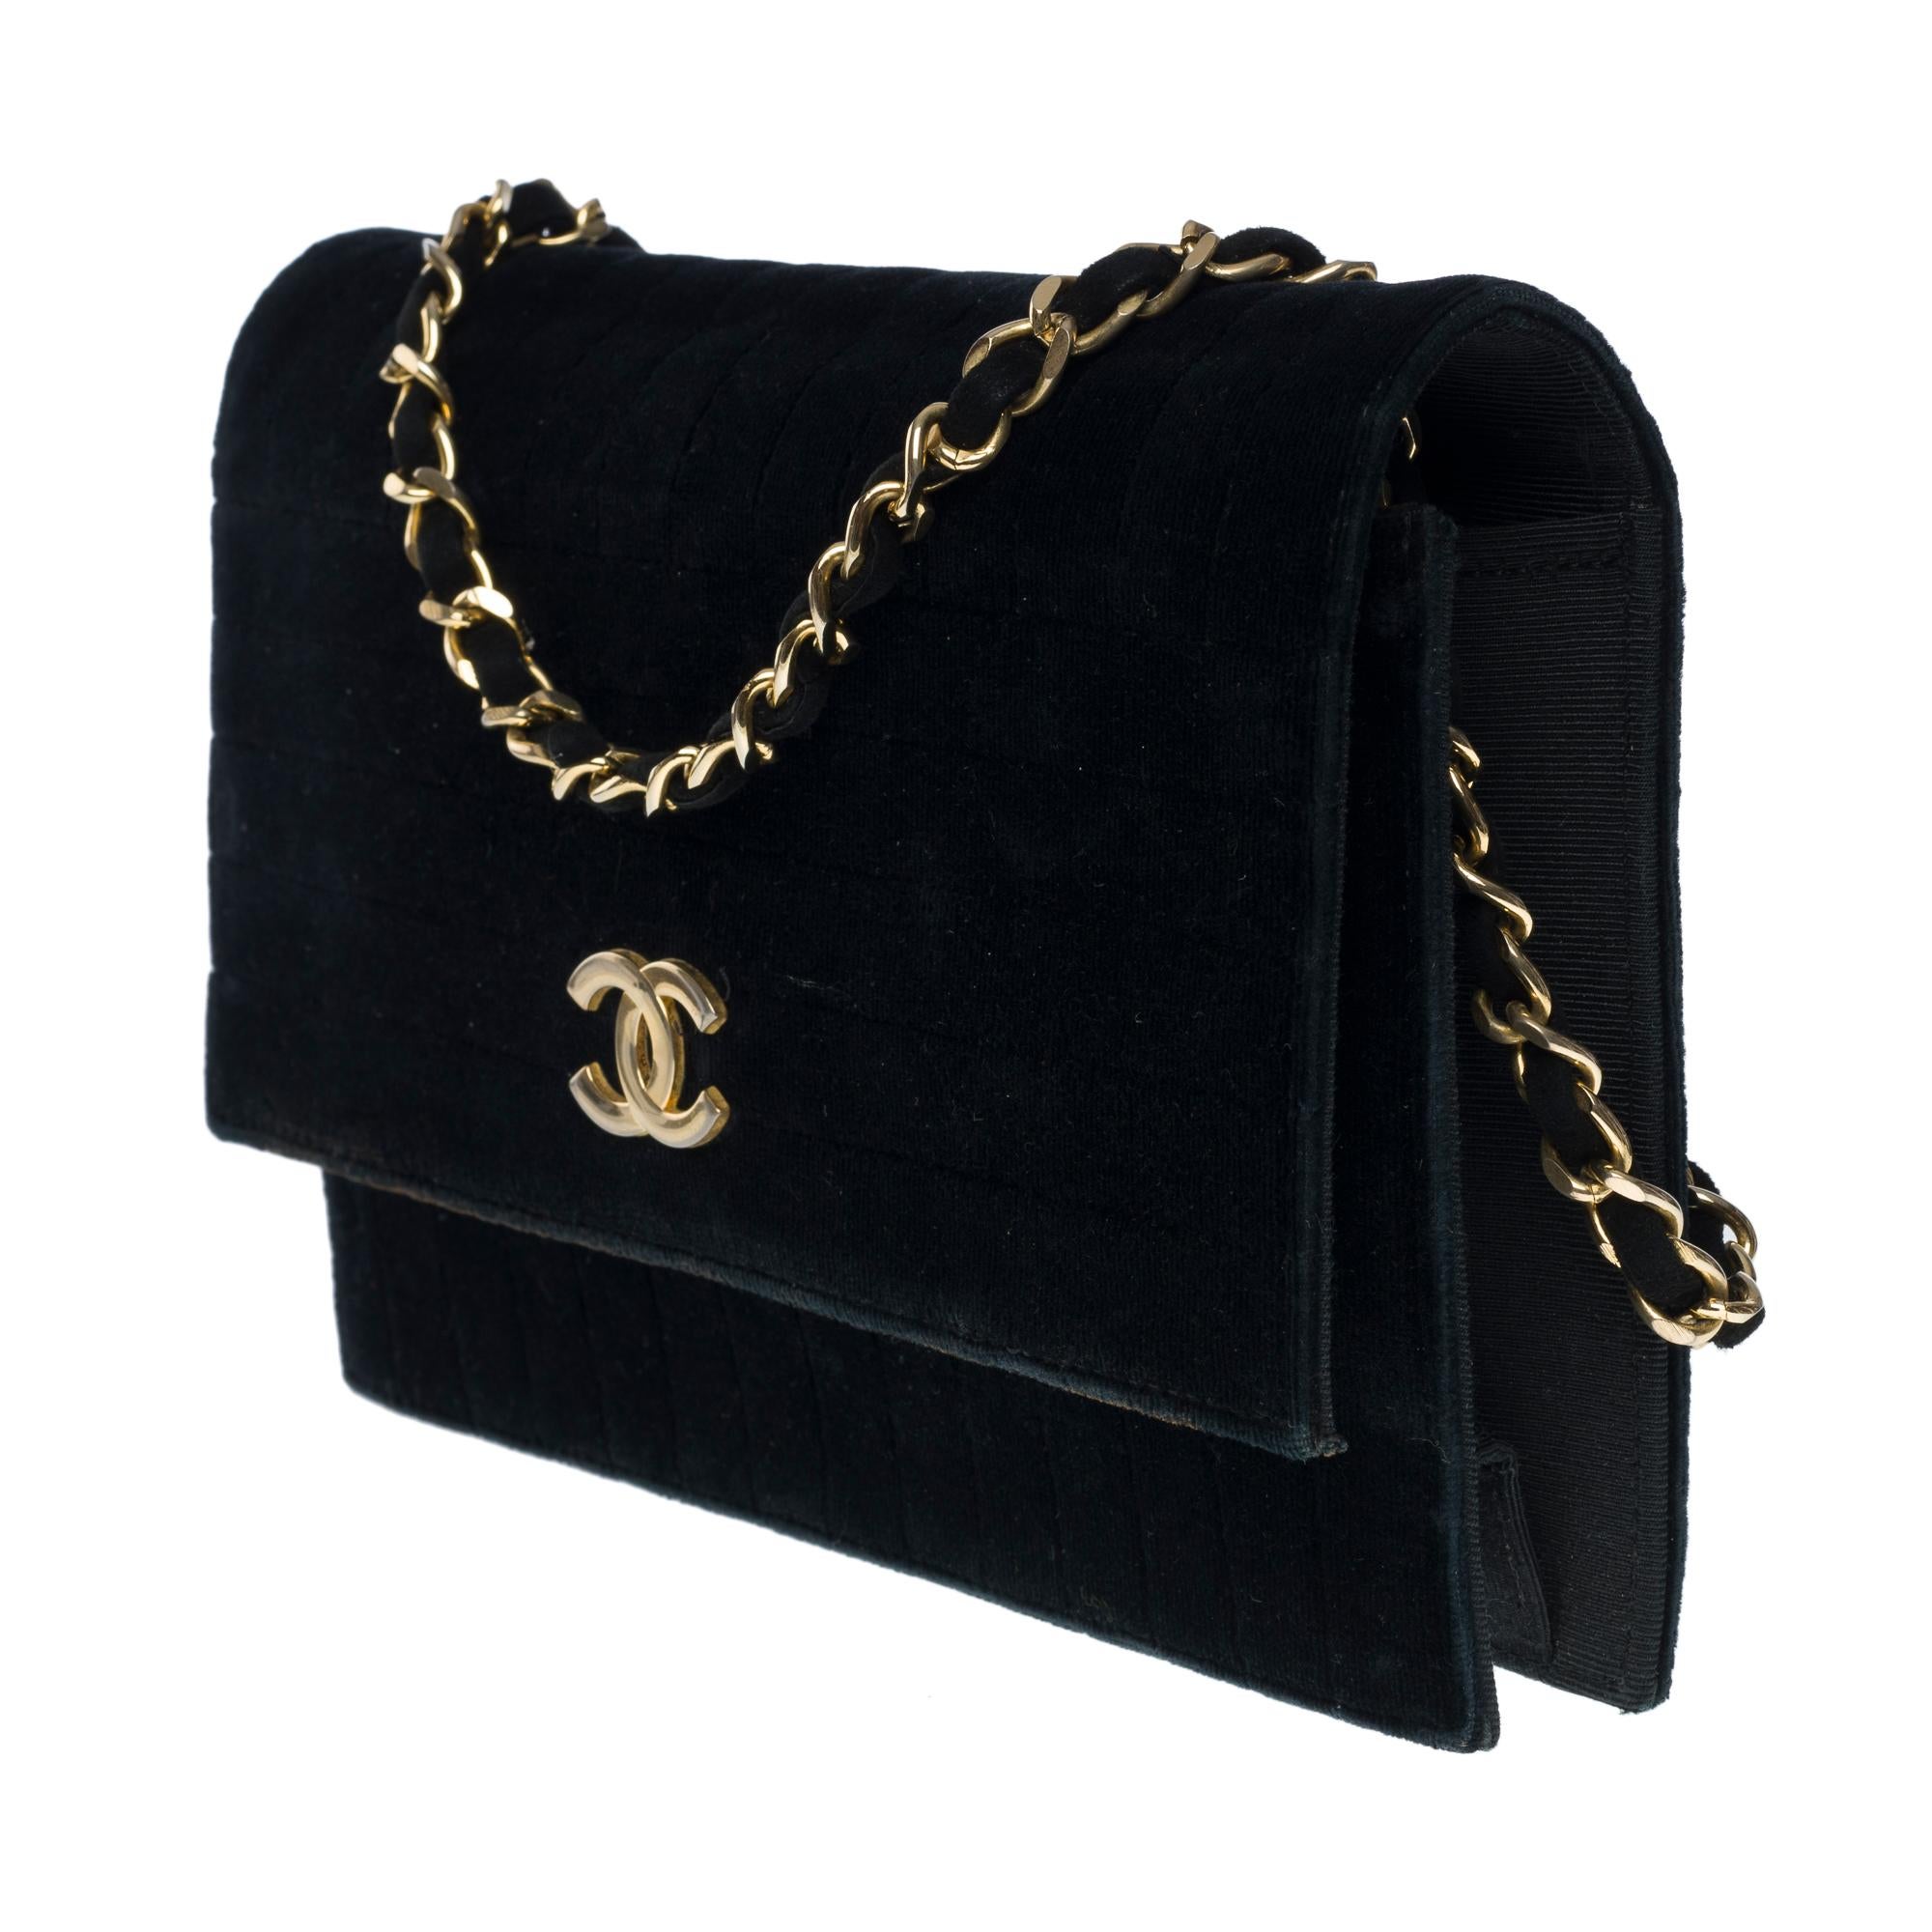 Women's Rare Chanel Classic shoulder flap bag in black velvet, GHW